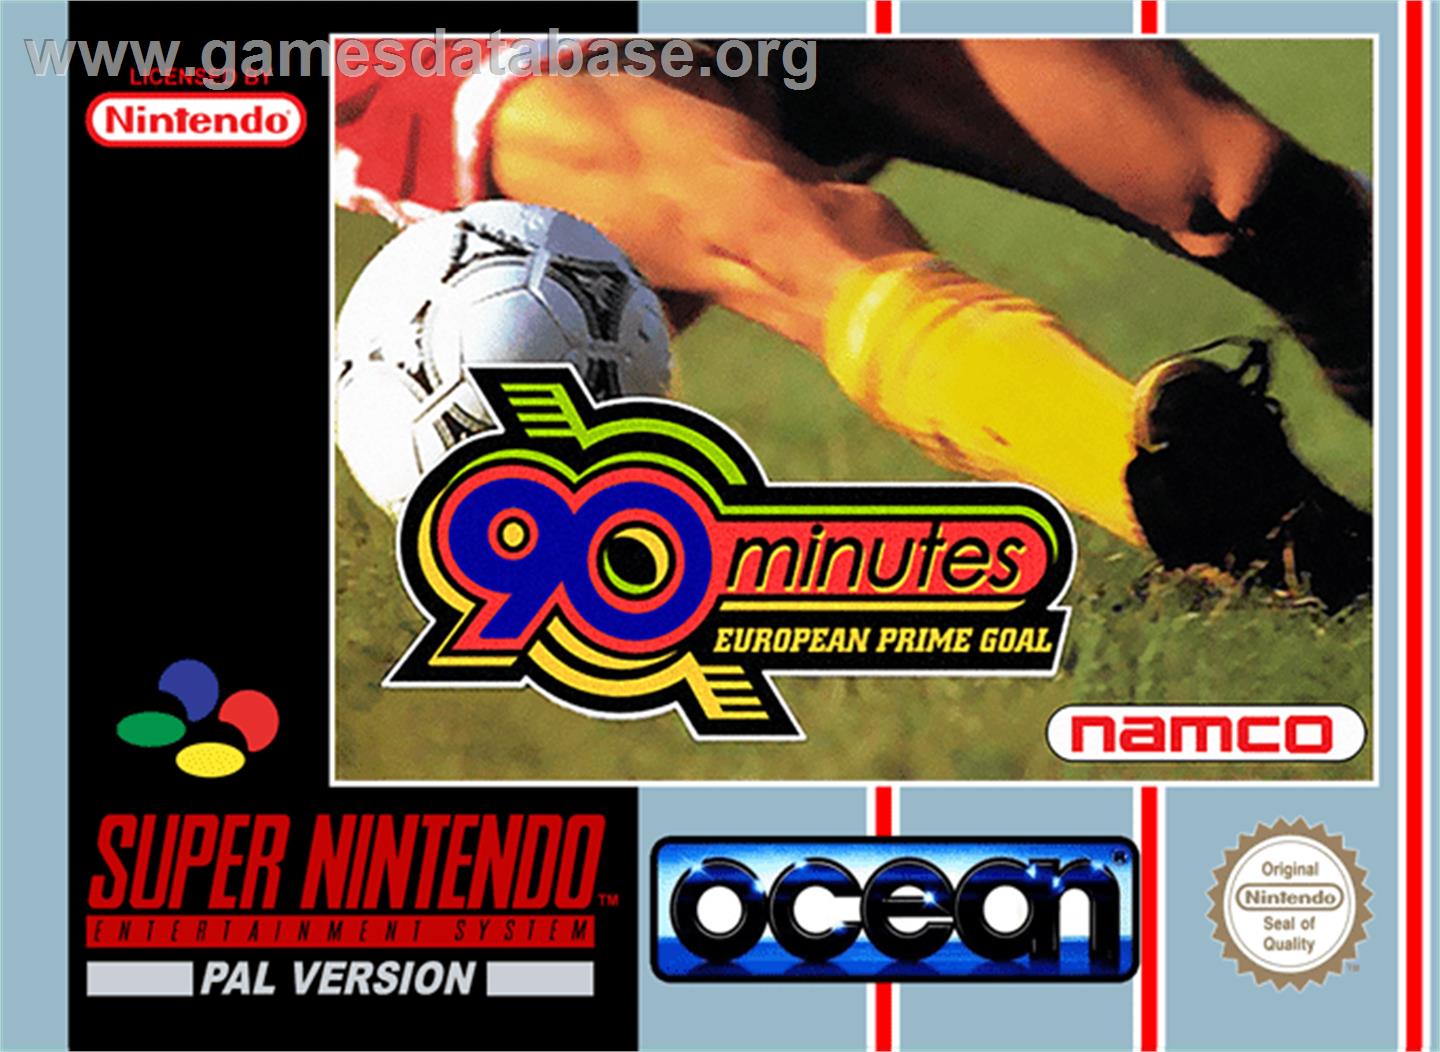 90 Minutes: European Prime Goal - Nintendo SNES - Artwork - Box